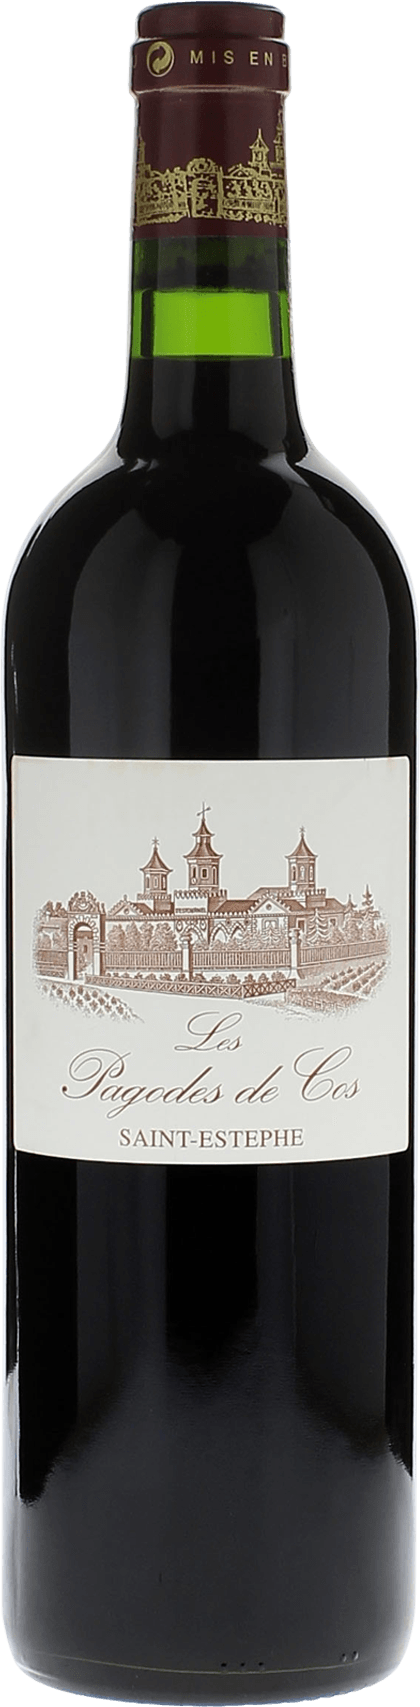 Pagodes de cos 2021 2me vin de COS D'ESTOURNEL Saint-Estphe, Bordeaux rouge